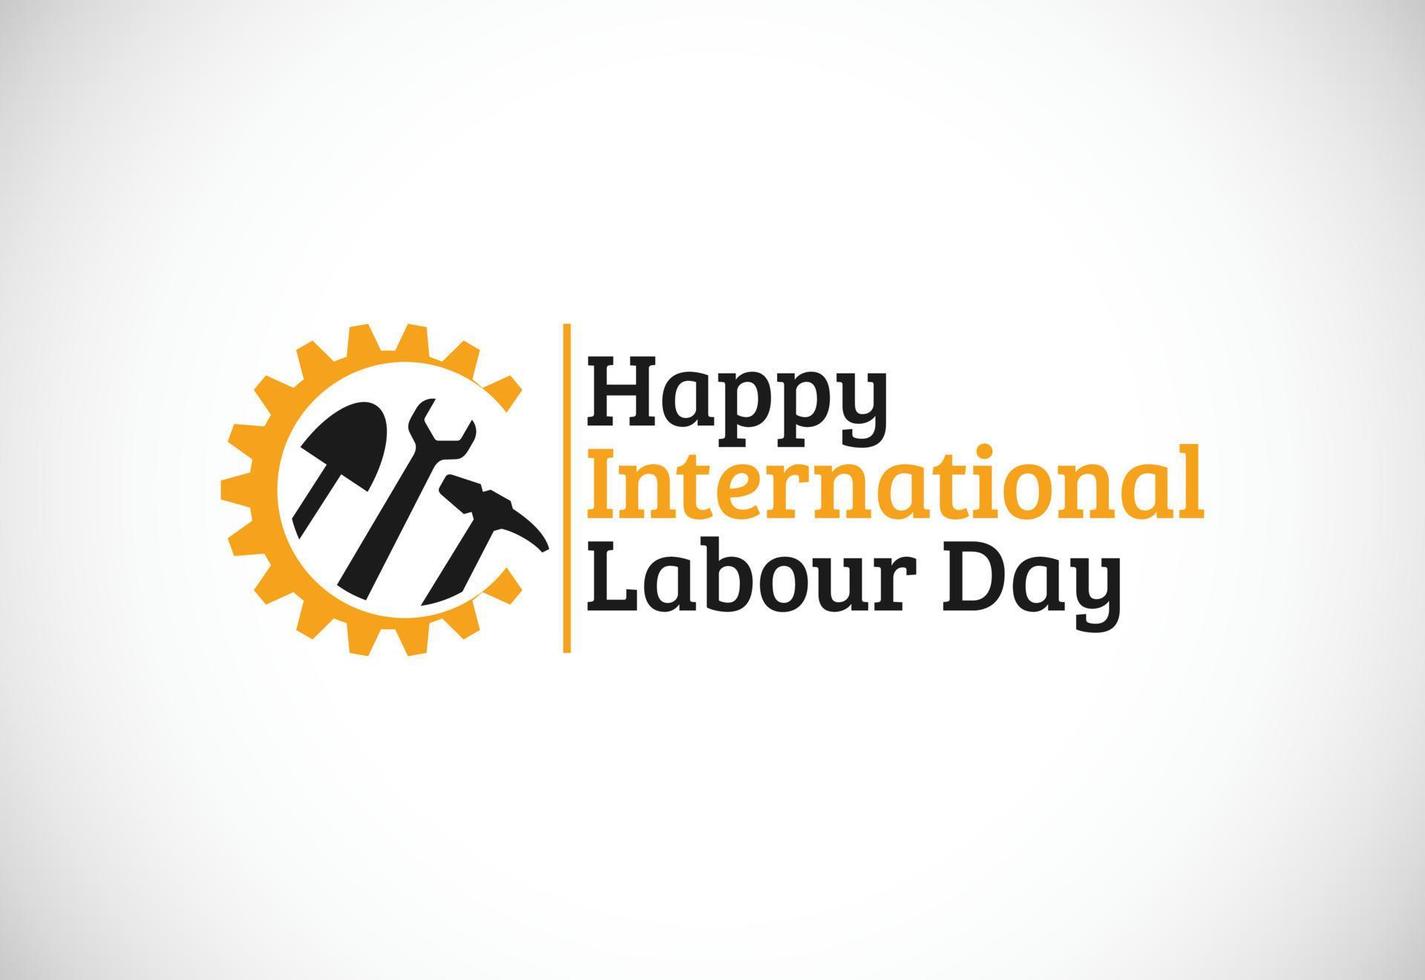 felice festa del lavoro 2022 vettore. 1 maggio Giornata internazionale del lavoro. arte vettoriale del giorno del lavoratore